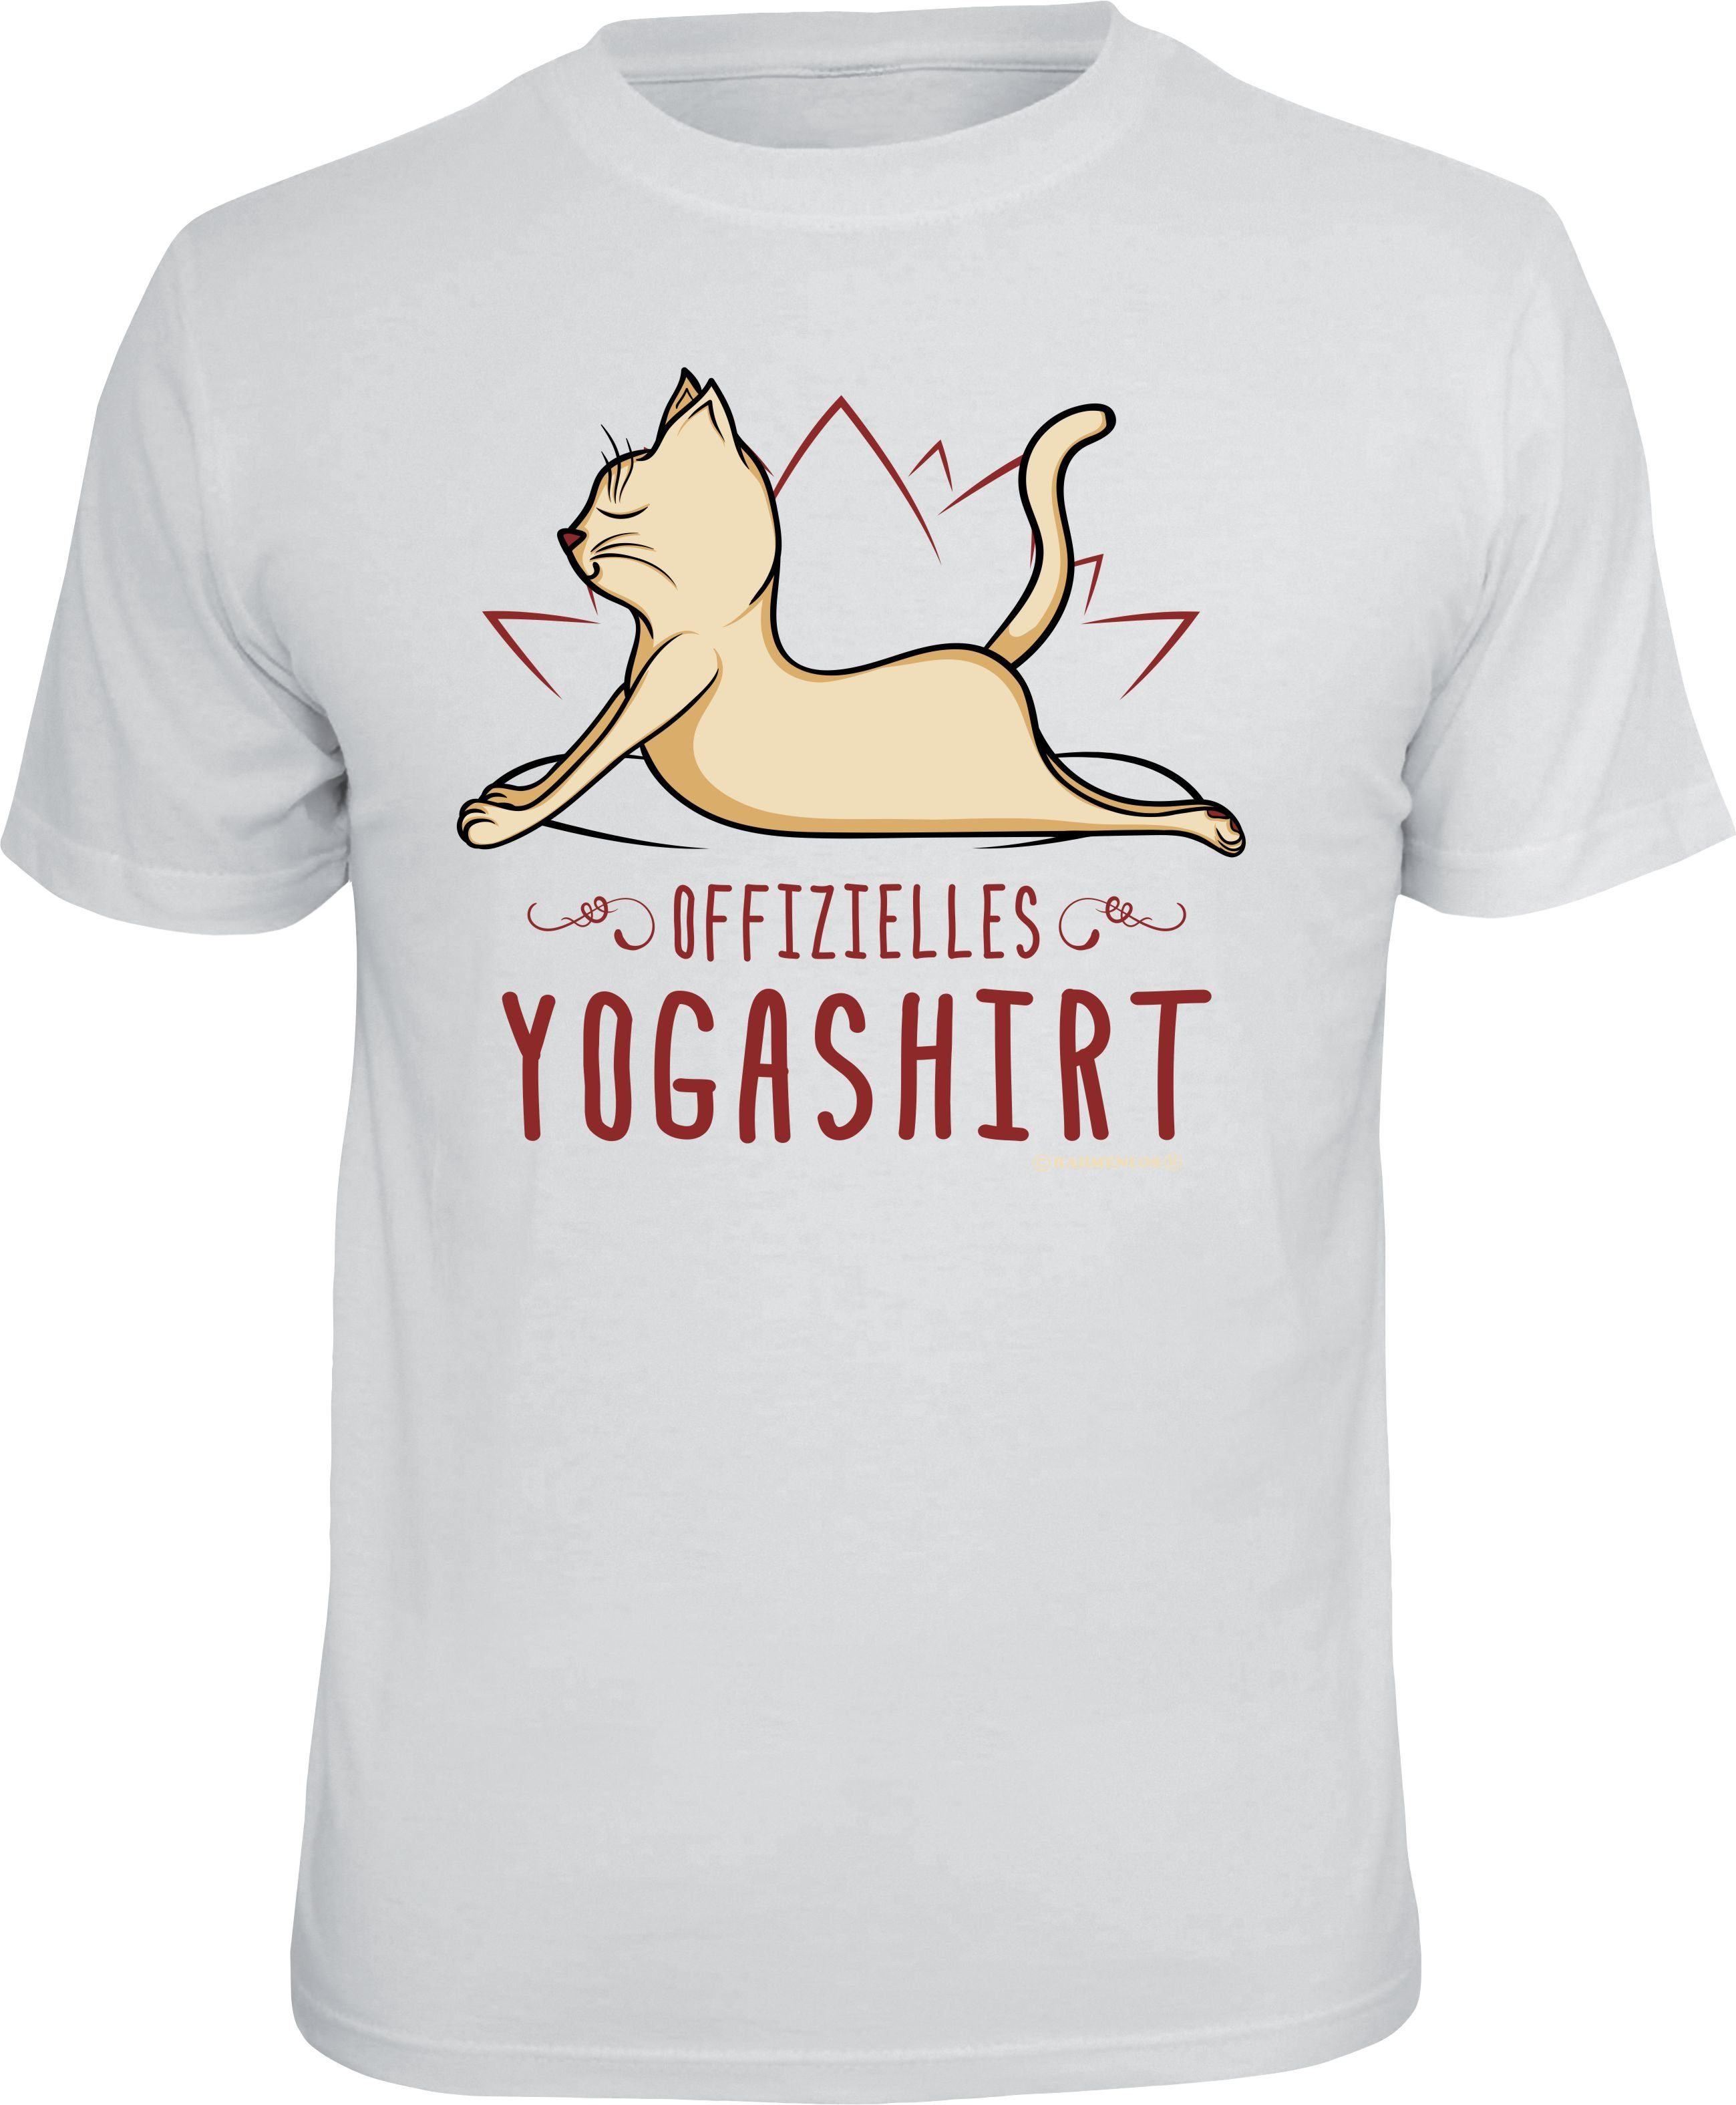 Rahmenlos T-Shirt Offizielles süsse Yogashirt Katze